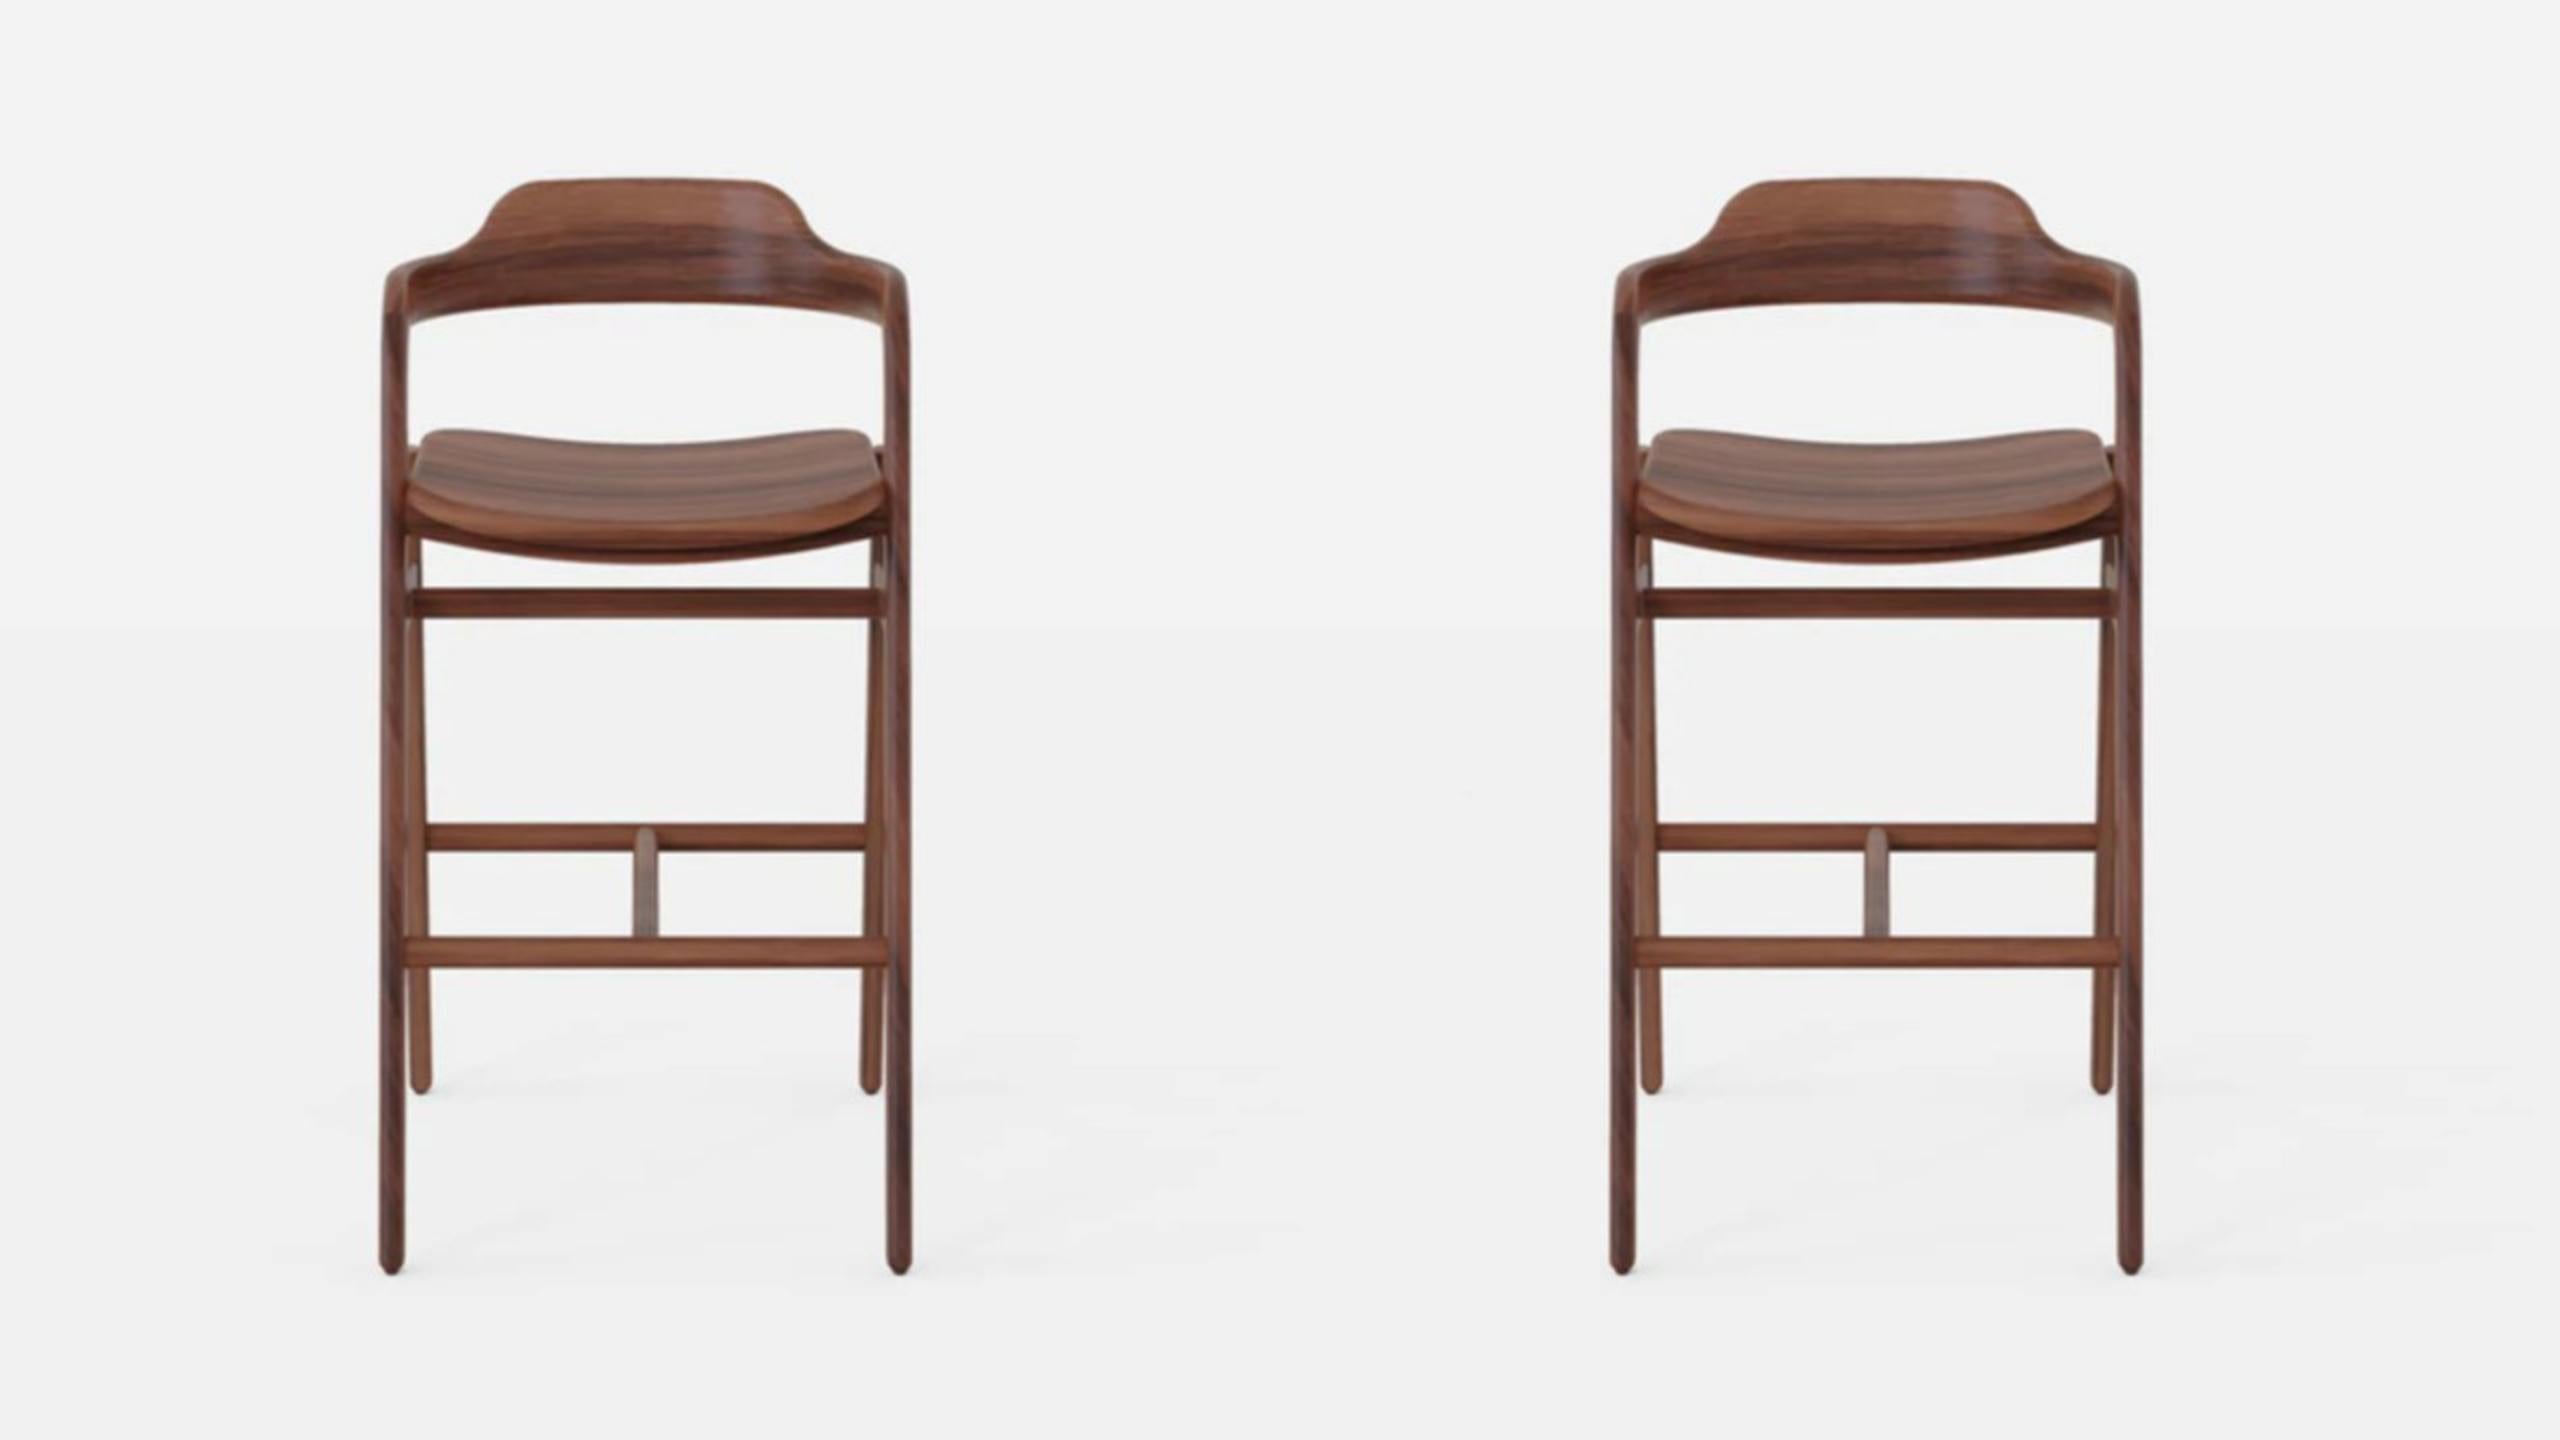 Ensemble de 2 chaises hautes équilibrées par Sebastián Angeles
Matériau : Noyer
Dimensions : L 45 x P 40 x 100 cm
Également disponible : Autres couleurs disponibles

L'amour des processus, les propriétés des matériaux, les détails et les concepts